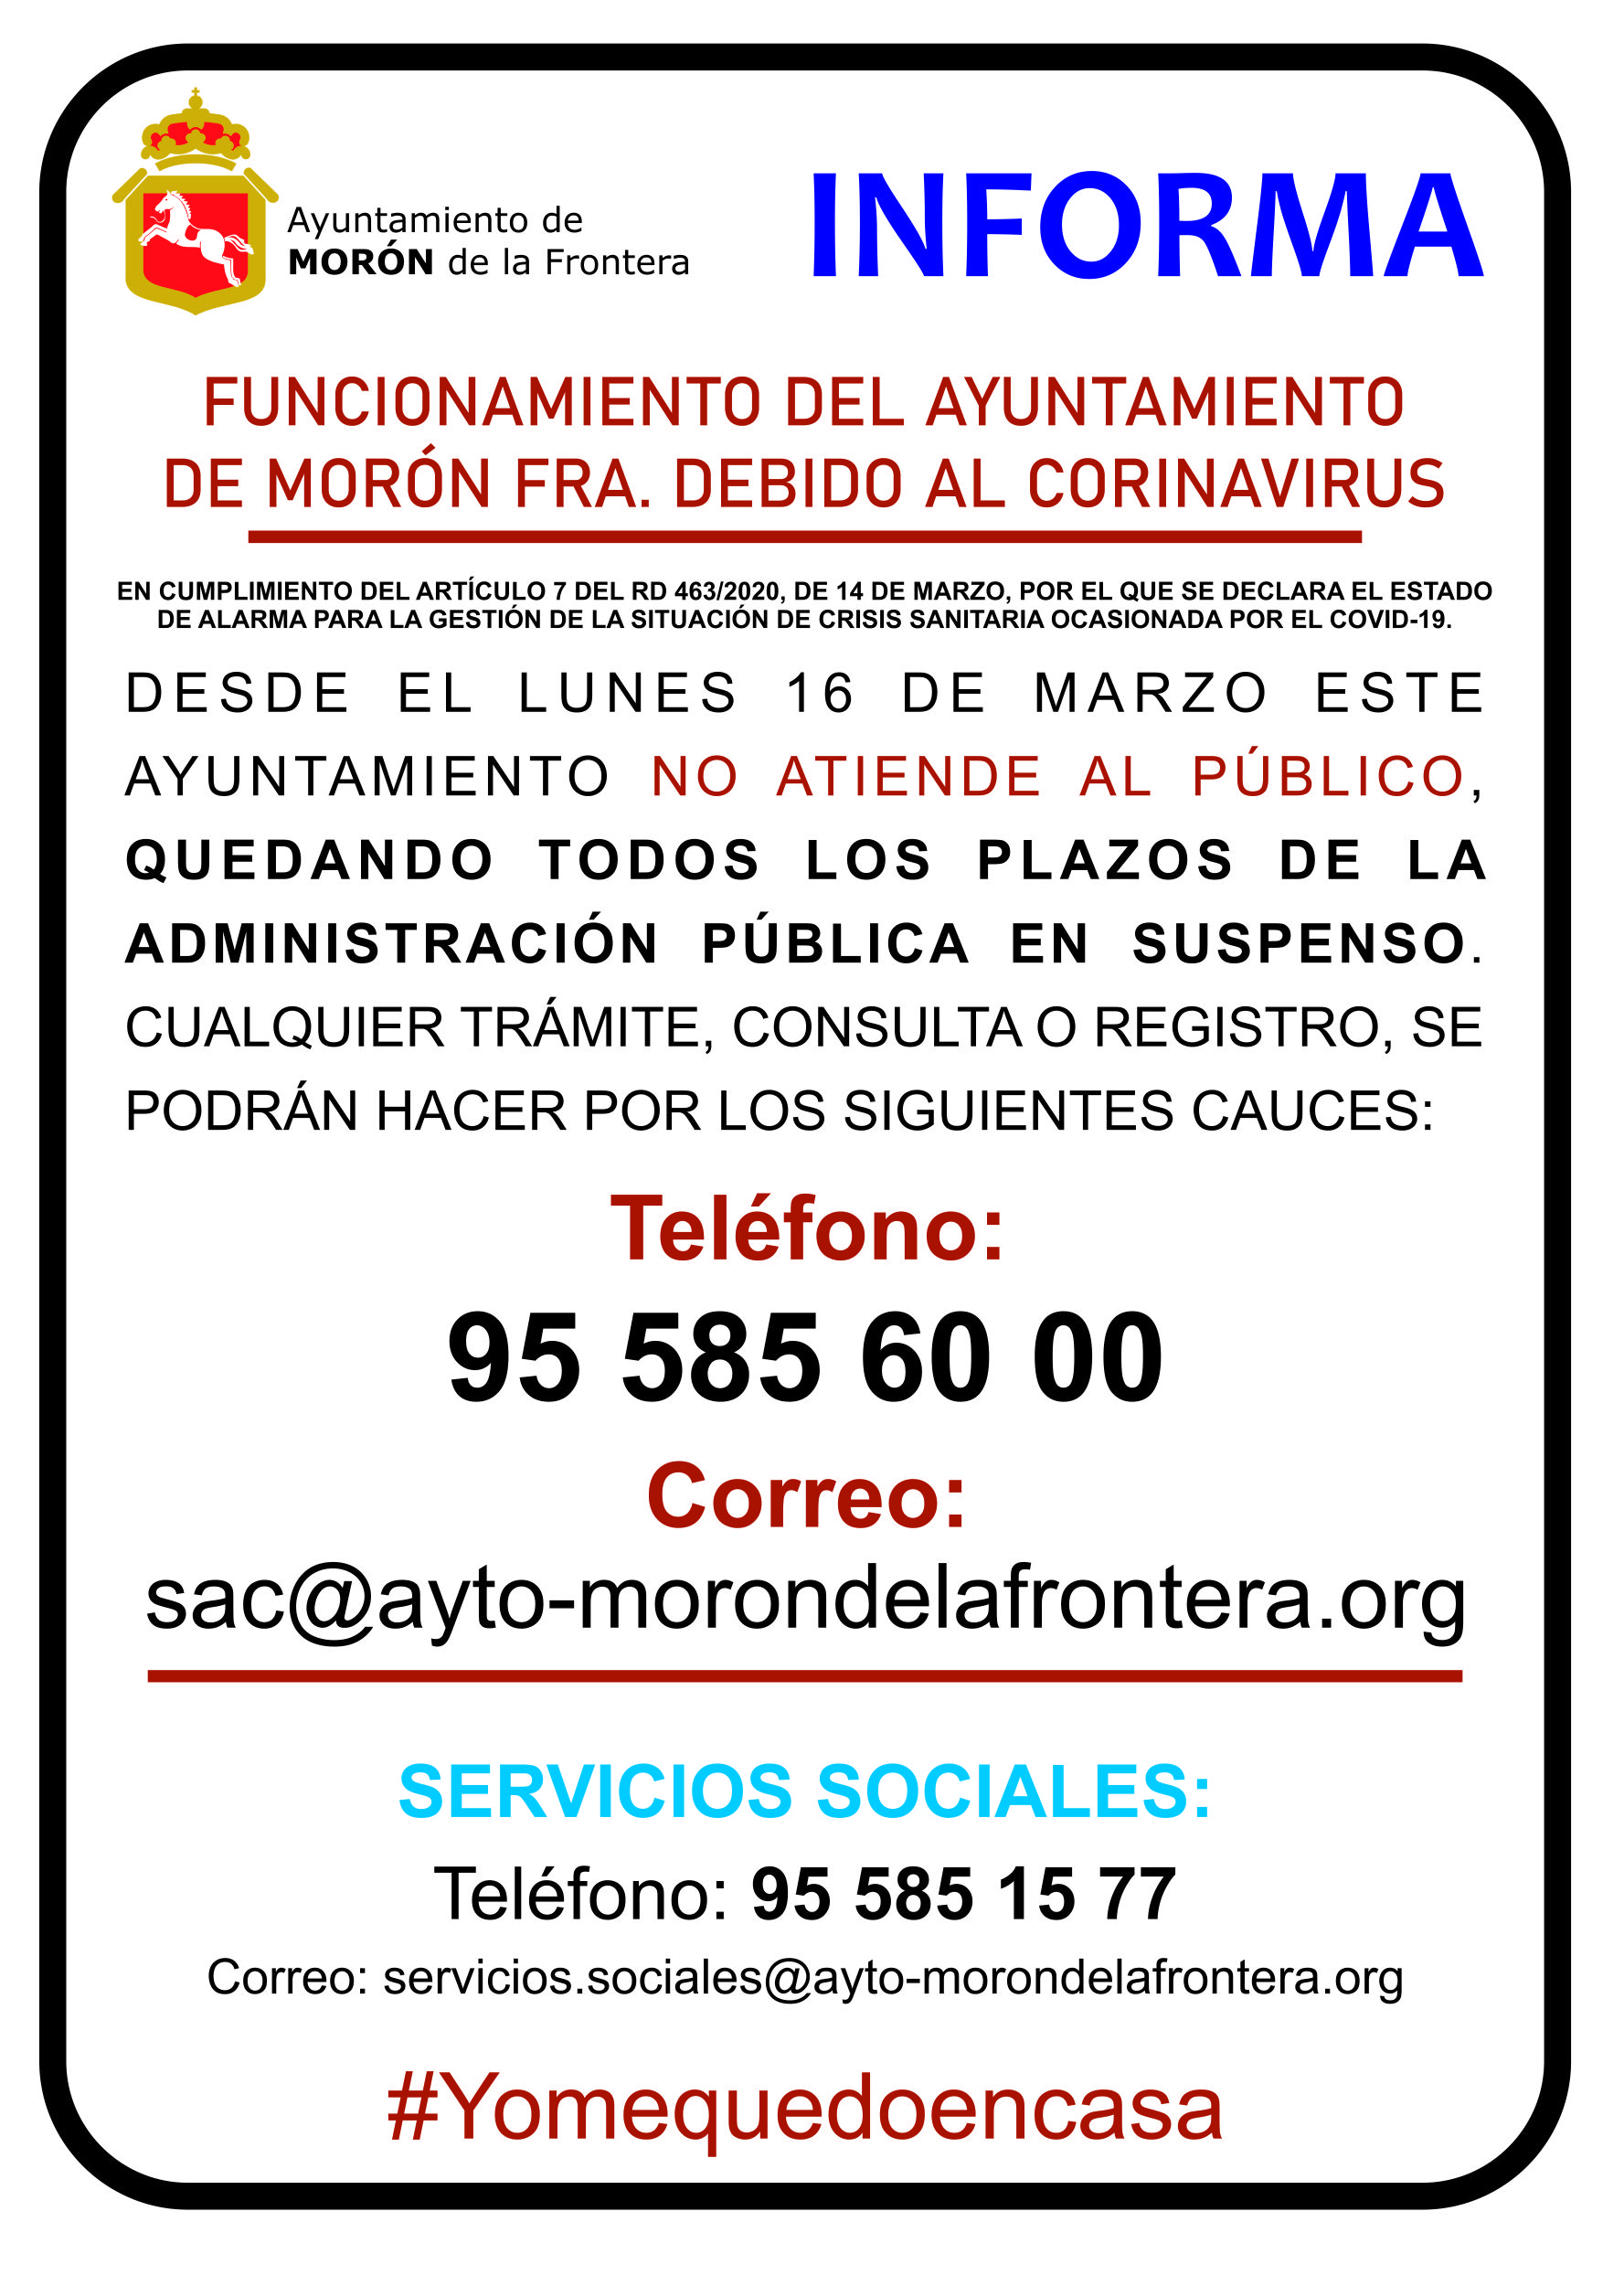 Funcionamiento de servicios del Ayuntamiento de Morón de la Frontera